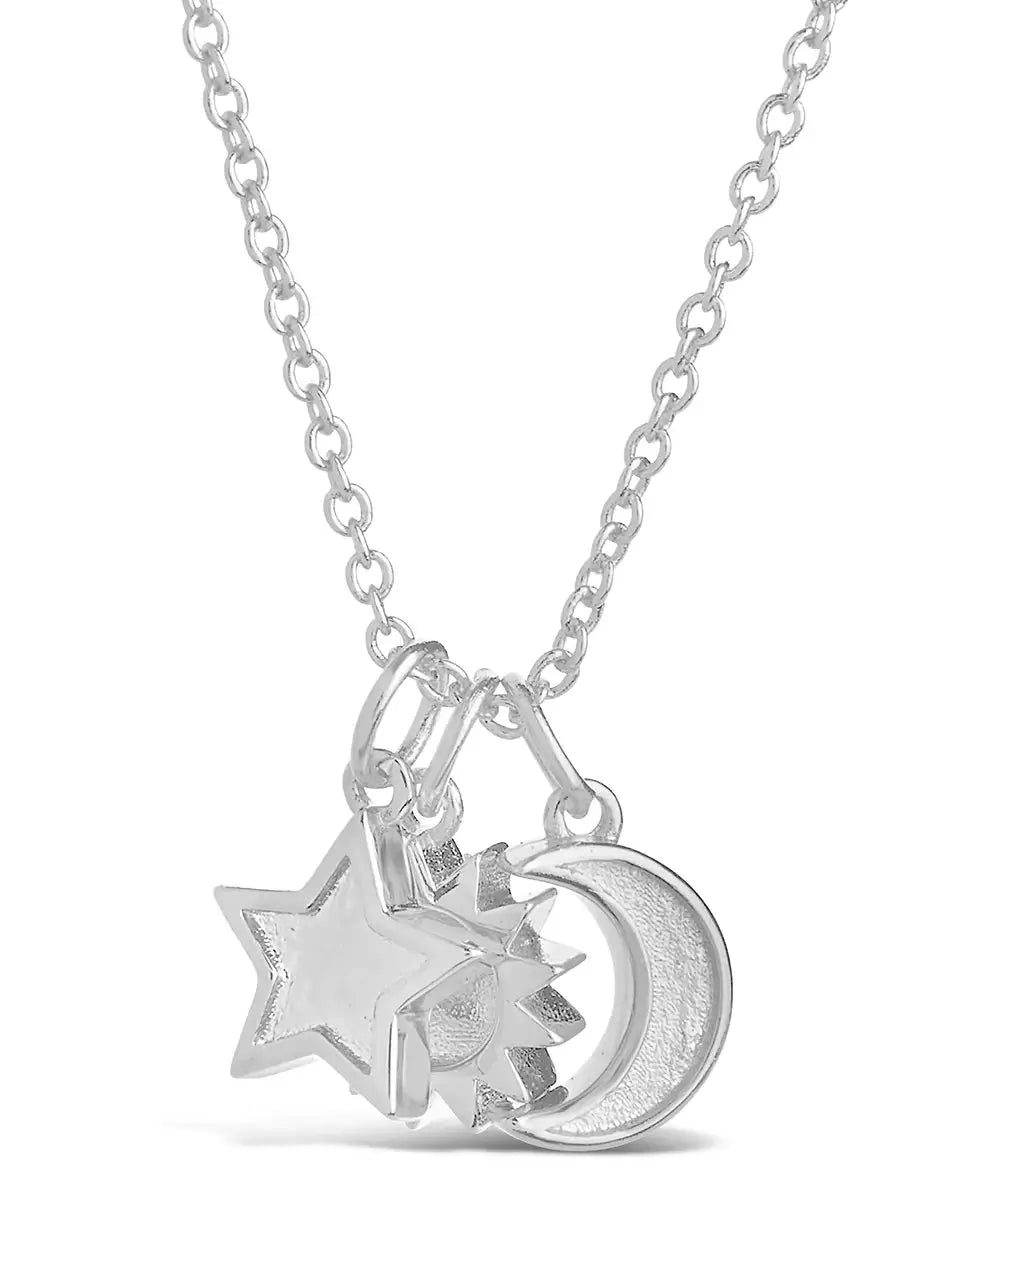 Jewel Star|women's Stainless Steel Moon Star Pendant Necklace - Enamel Sun  Jewelry